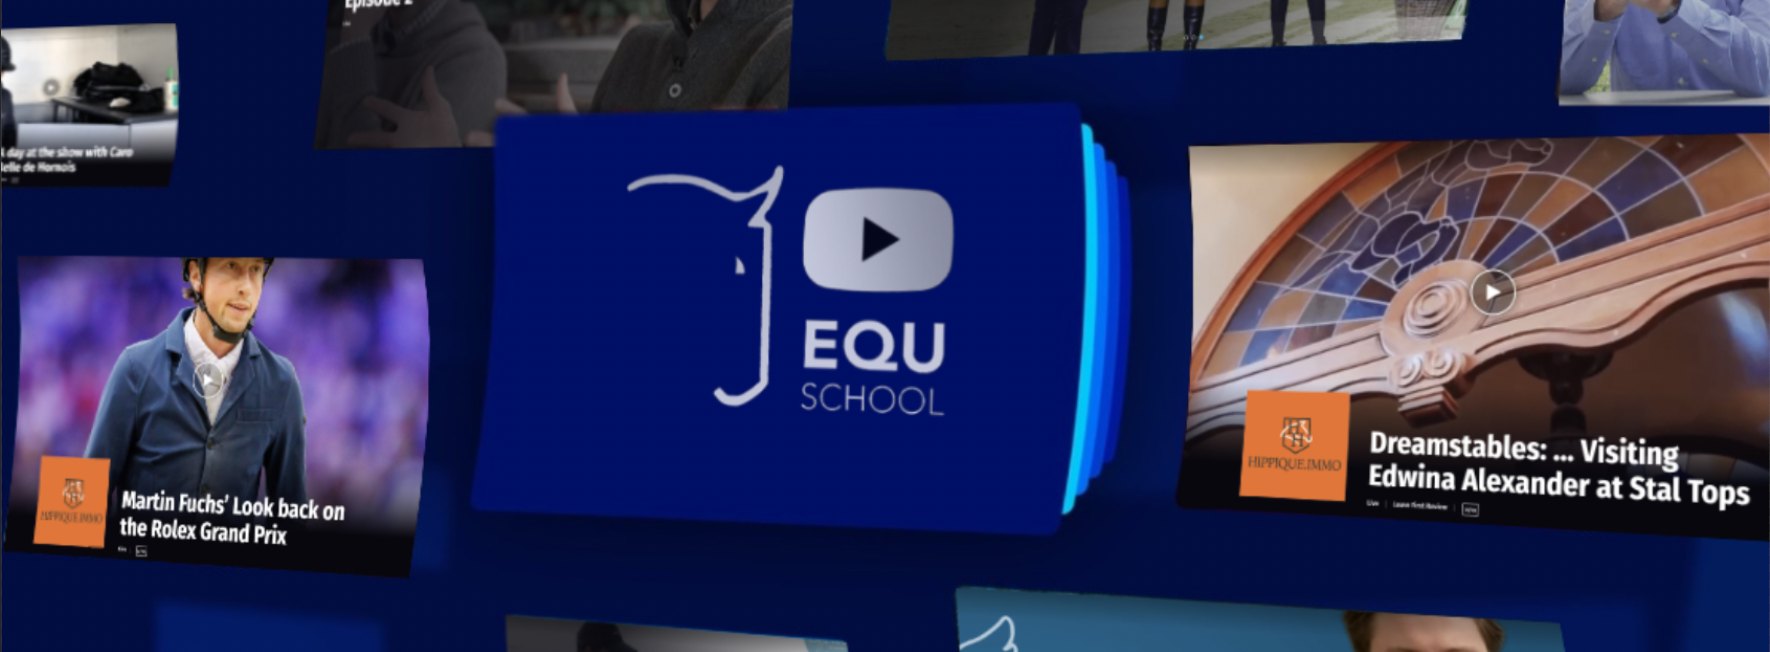 Paardensport Video kanaal - Equschool in een nieuw jasje